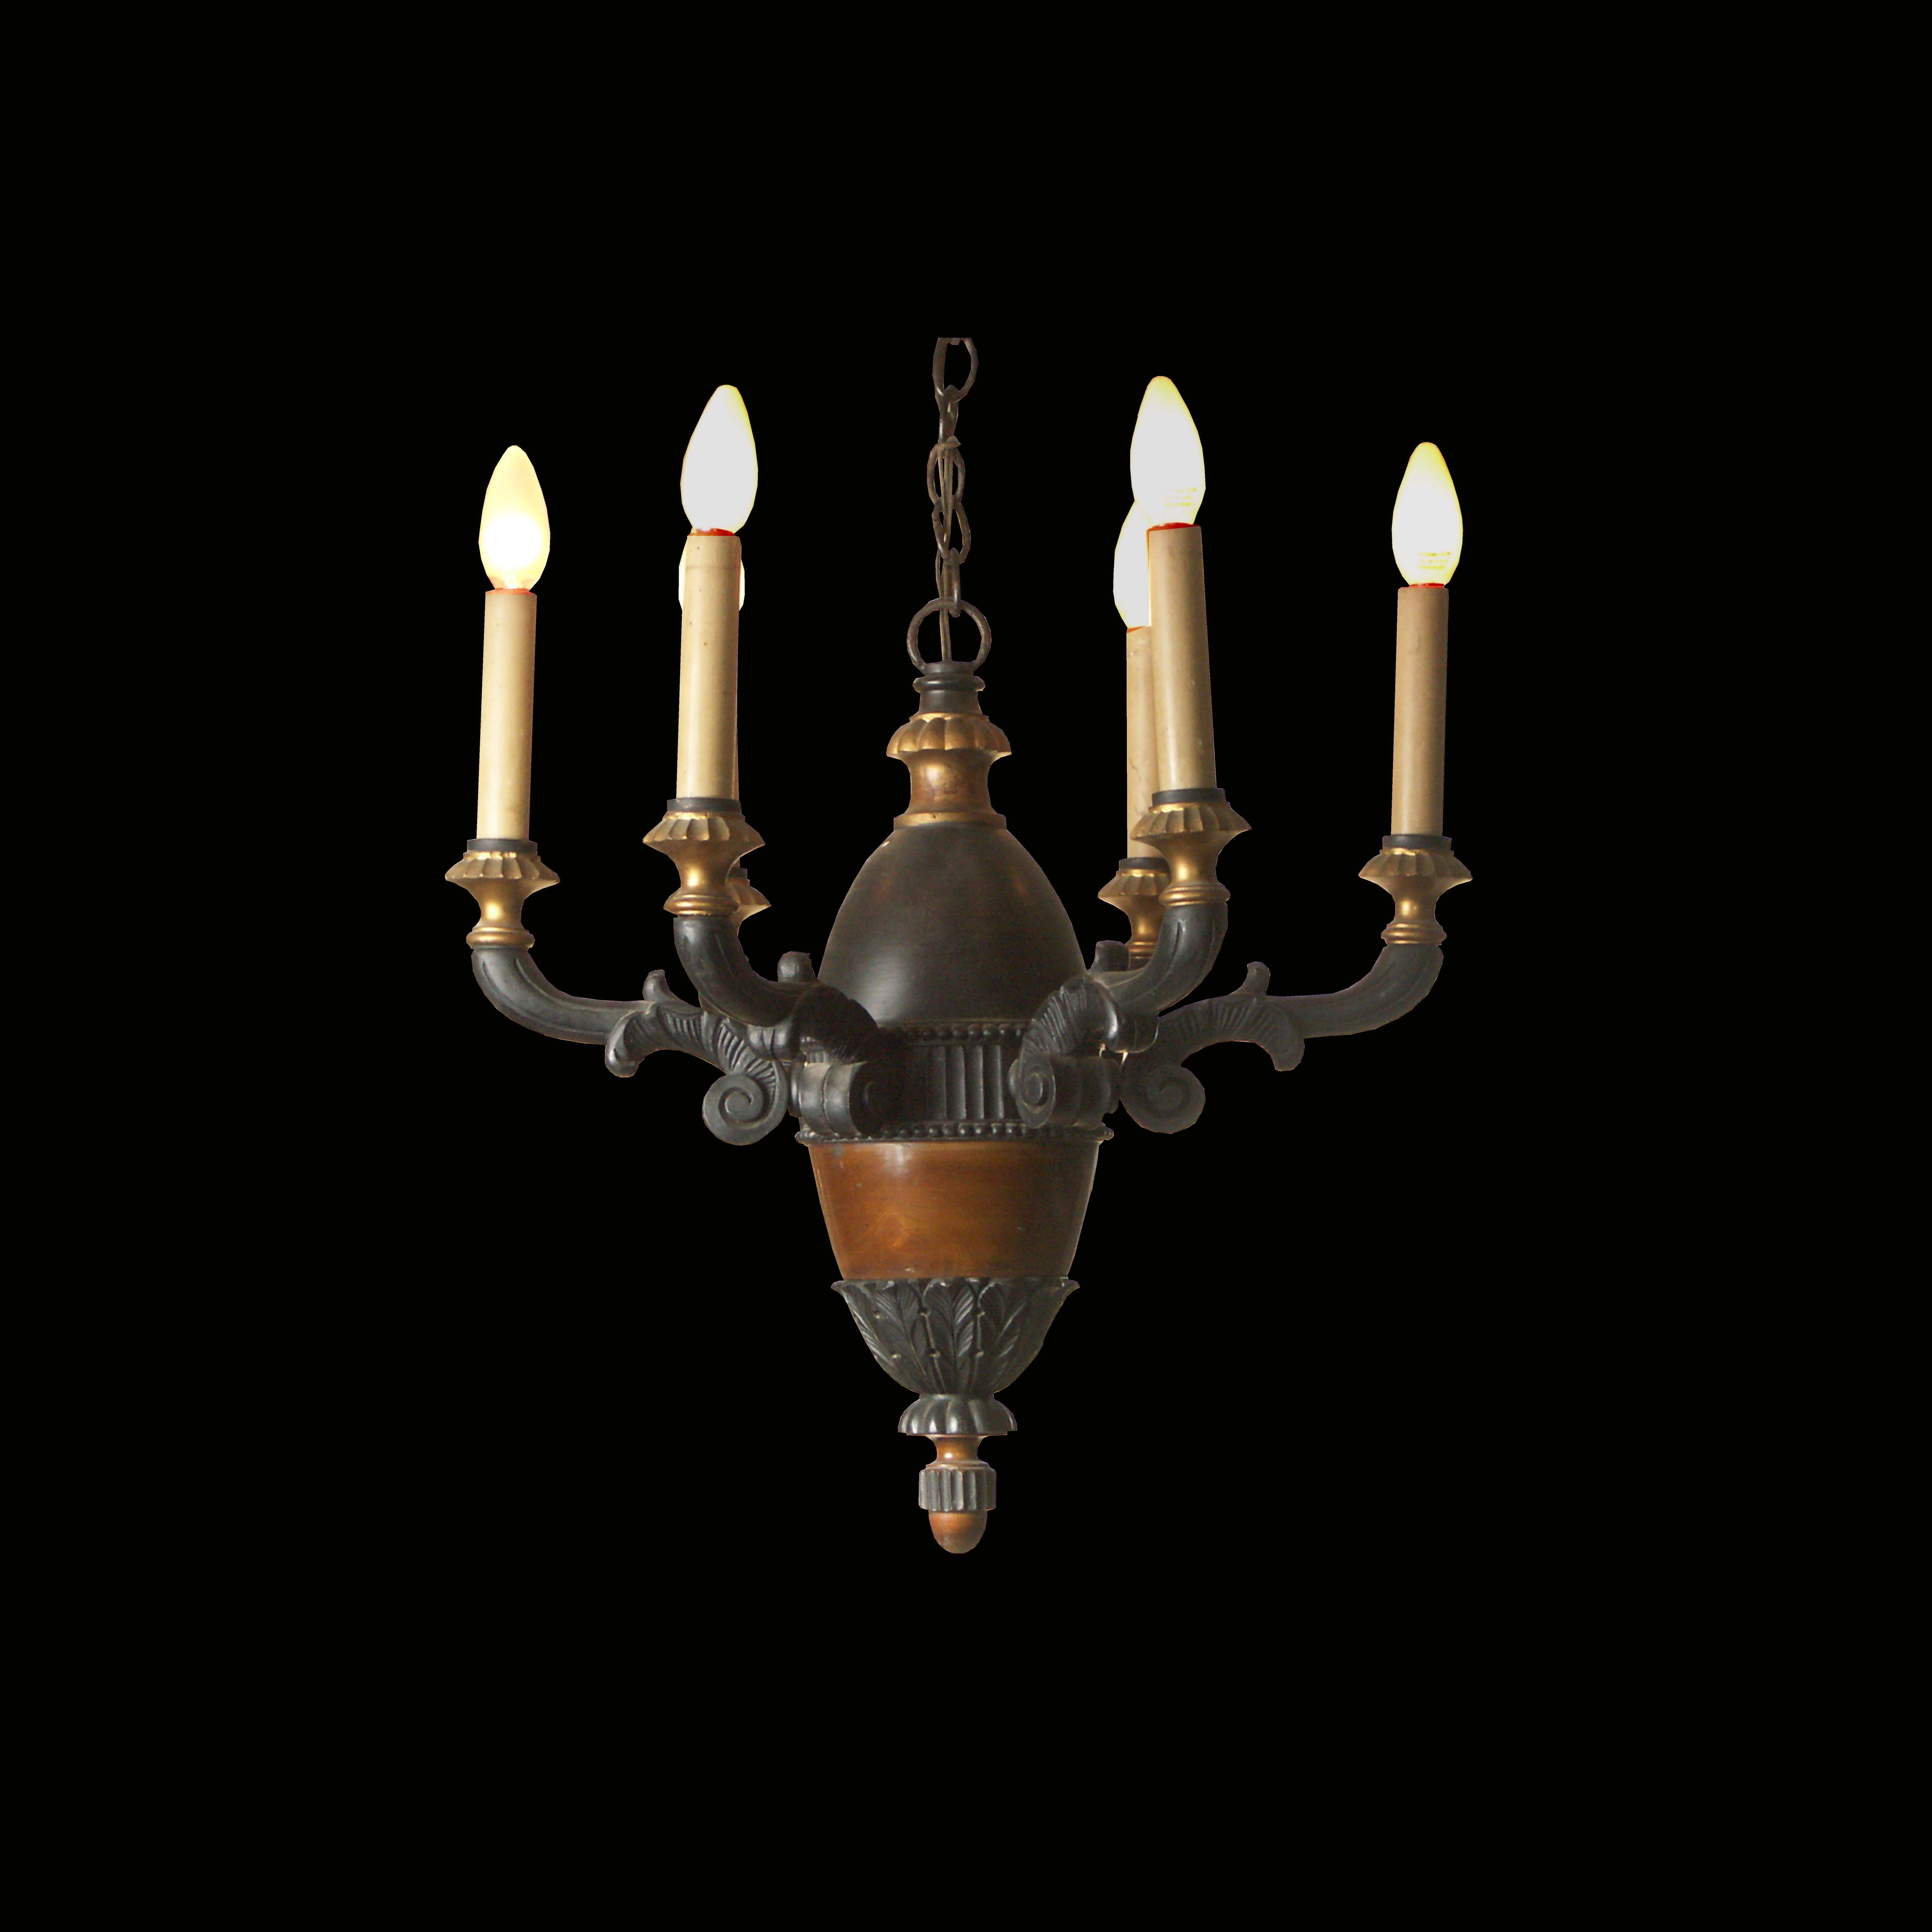 Dans le style du classicisme baroque, corpus en bois, en partie laqué et doré. Six bras avec décor en spirale, feuilles d'acanthe
Convient pour les États-Unis.